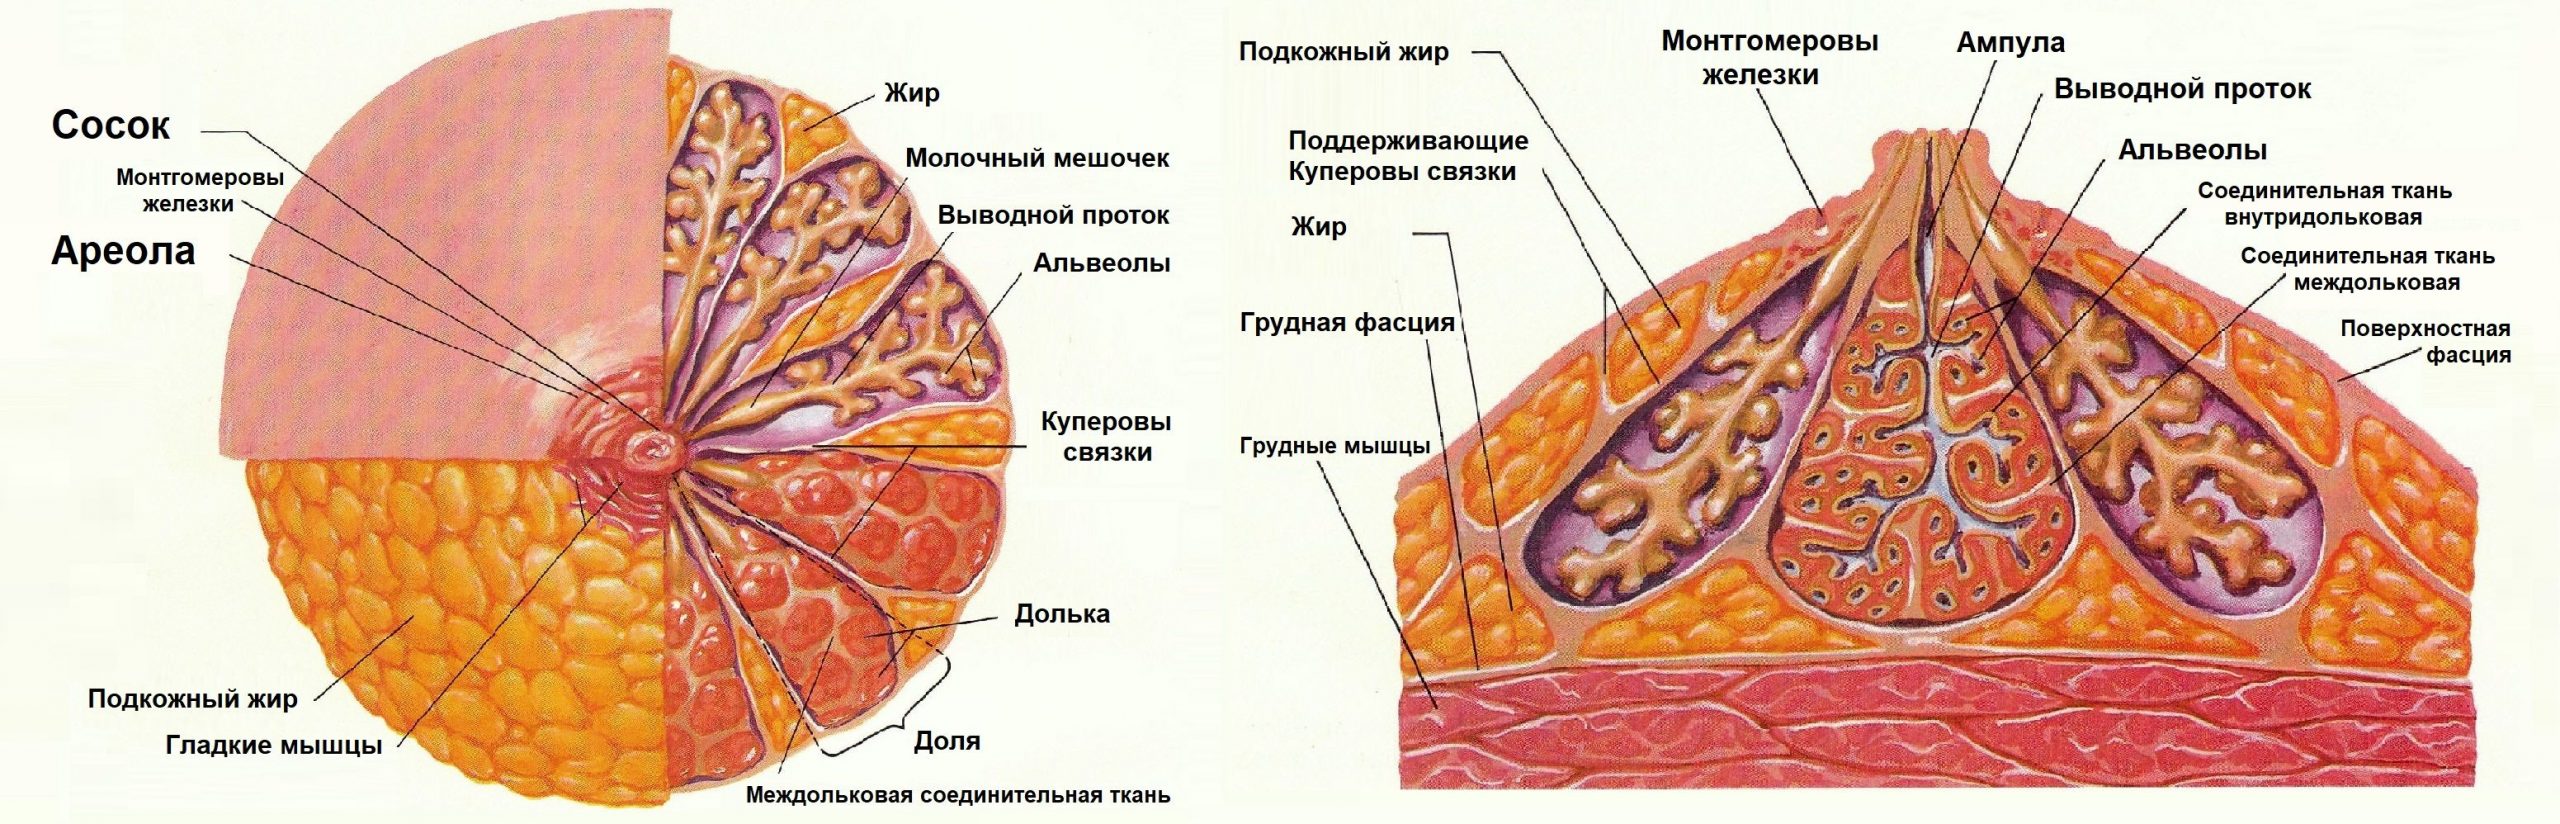 Молочная железа строение анатомия